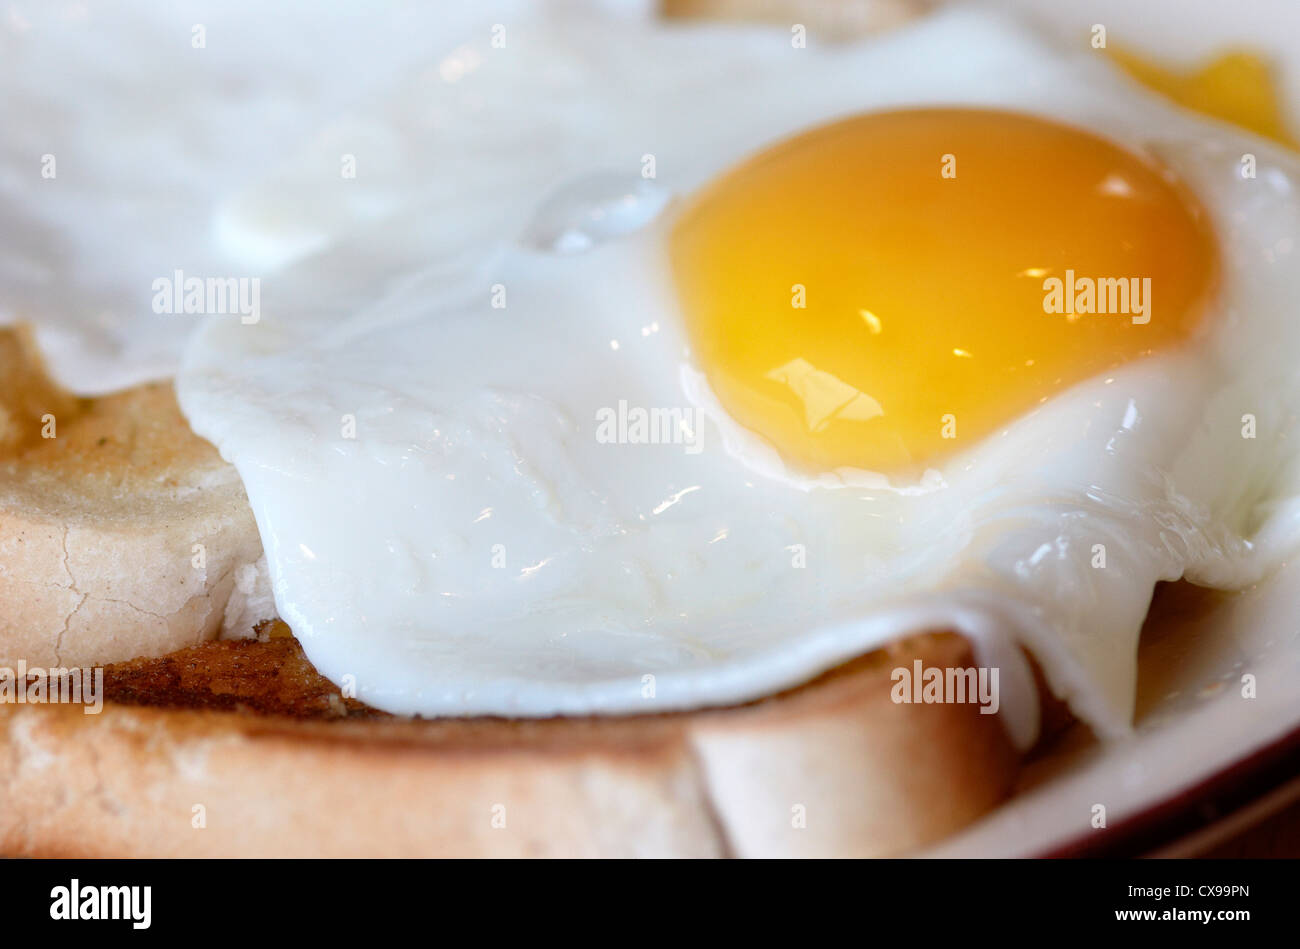 Fried Egg on Toast. Stock Photo